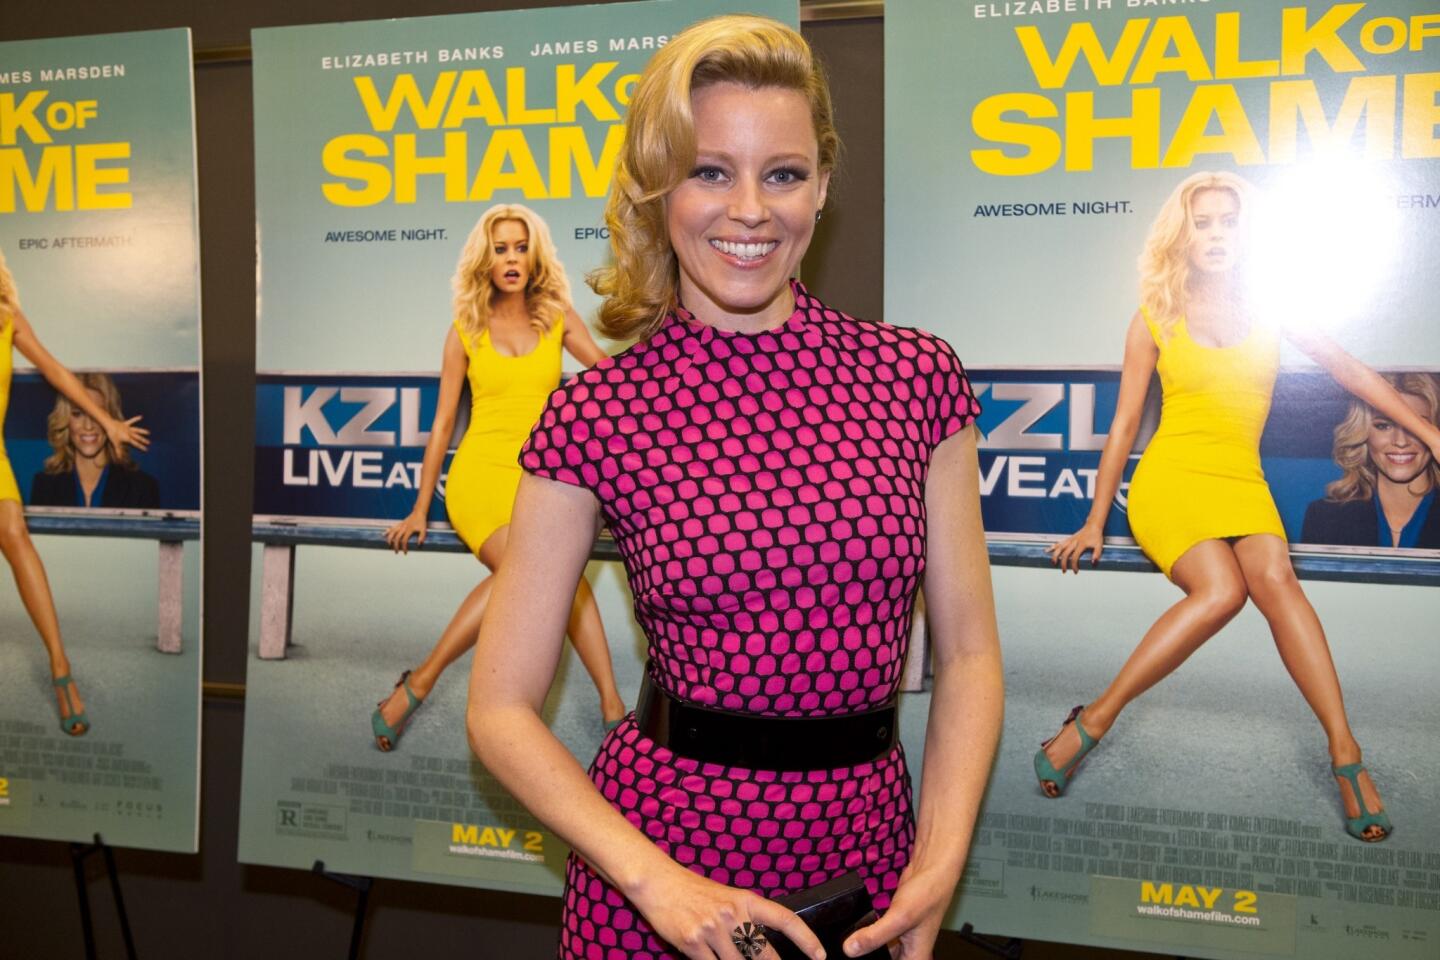 Elizabeth Banks sued over 'Walk of Shame' script